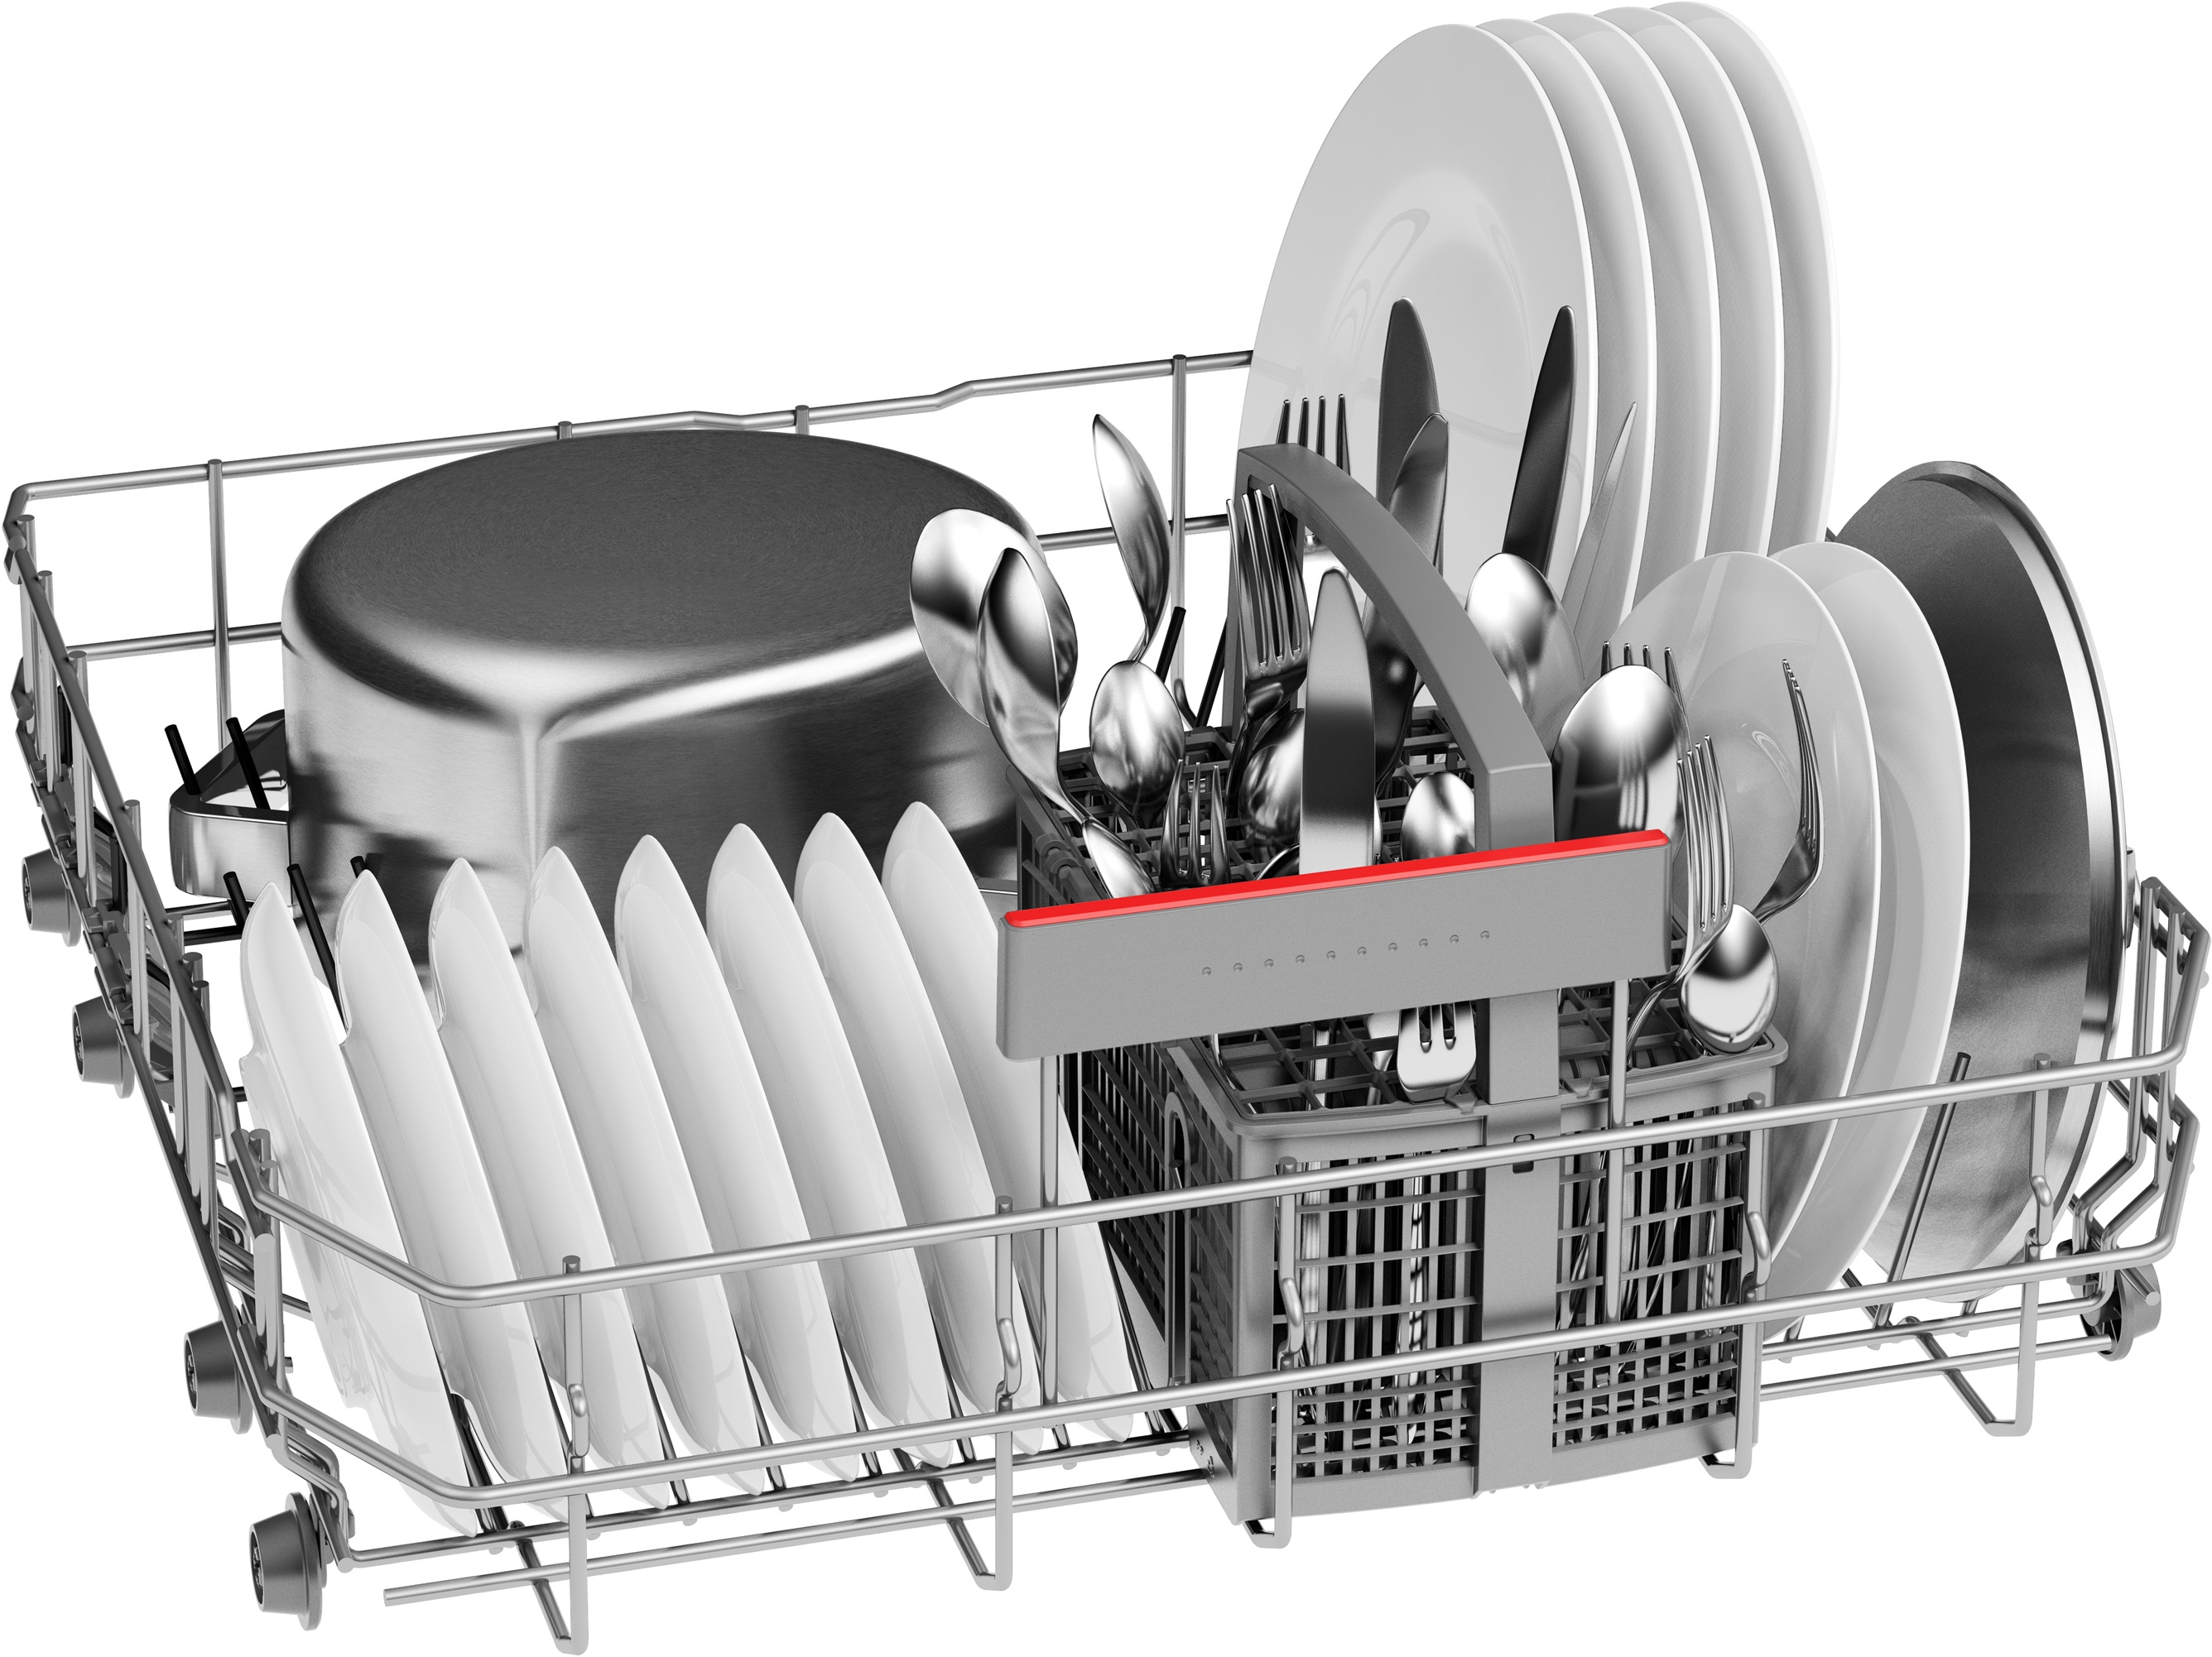 Serija 4, Samostojeća mašina za pranje sudova, 60 cm, Nerđajući čelik, SMS4HTI31E